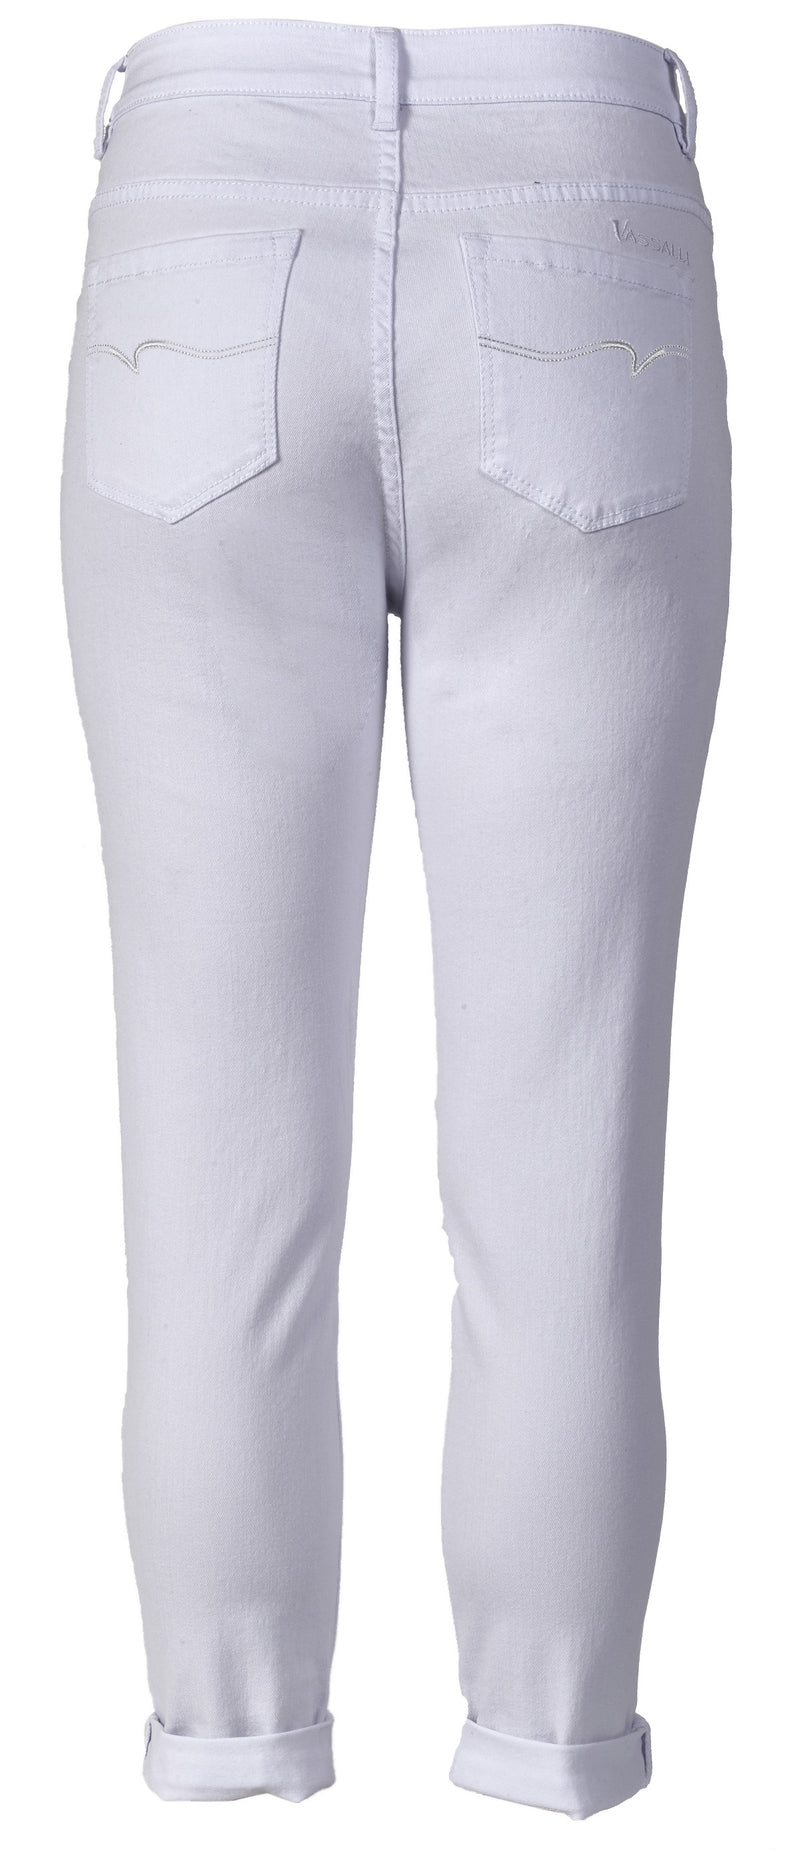 Vassalli 7/8 5 Pocket Pant White